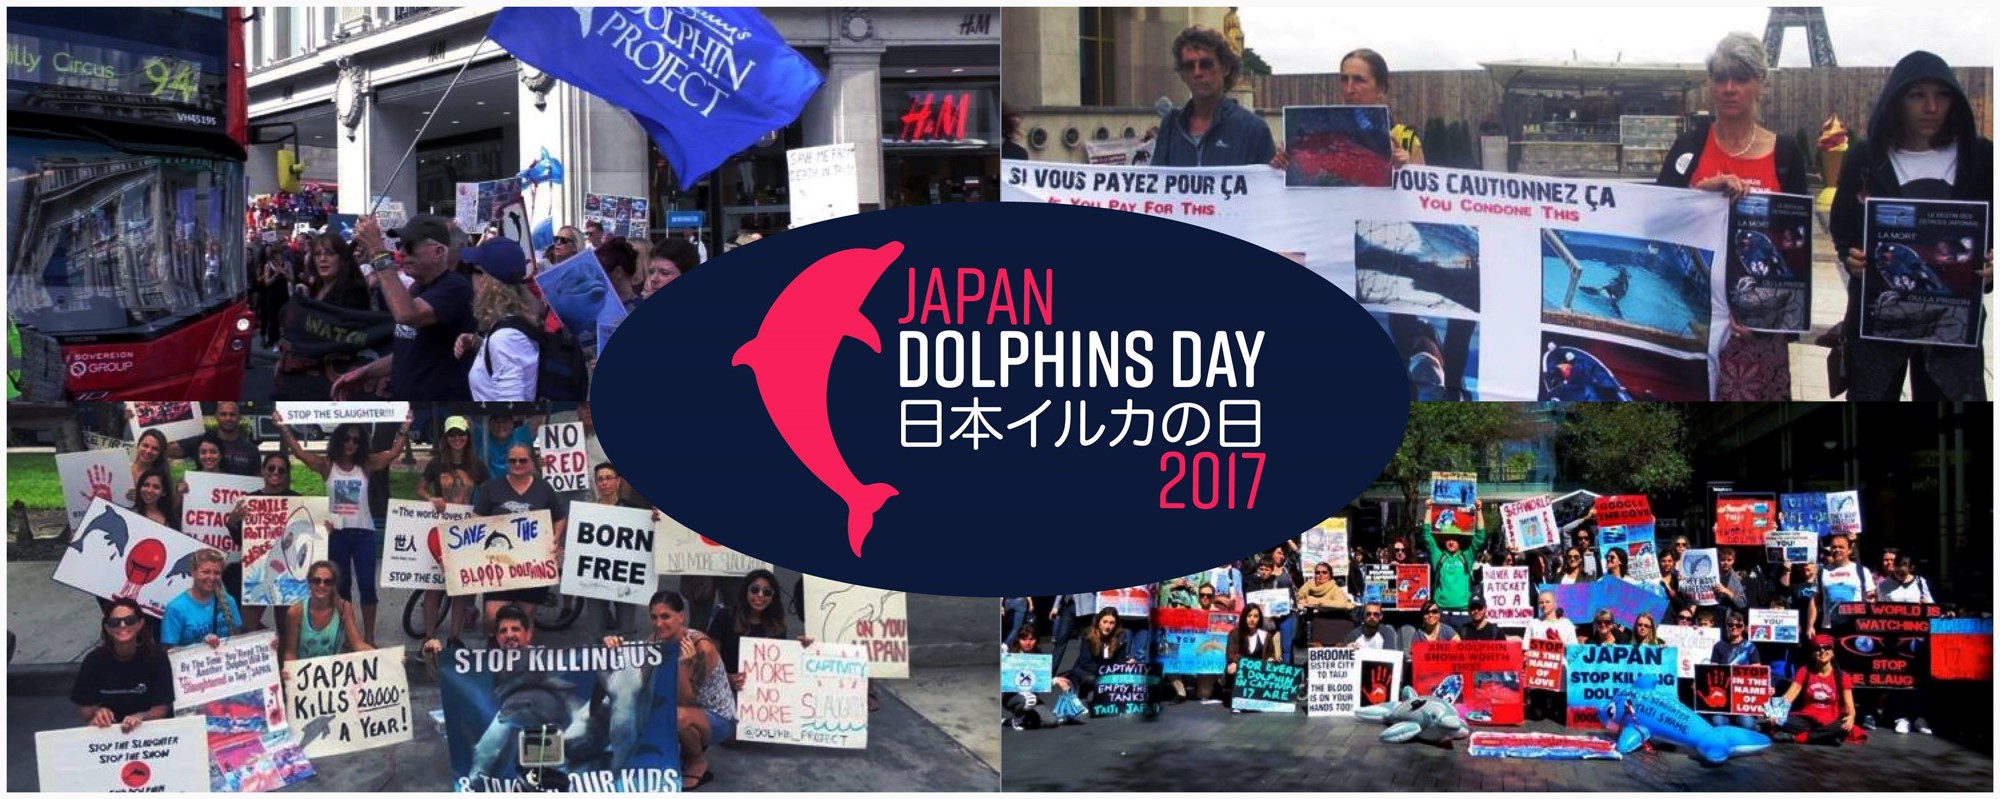 Japan Dolphins Day 2017 – samedi 2 septembre, Place de Clichy à Paris